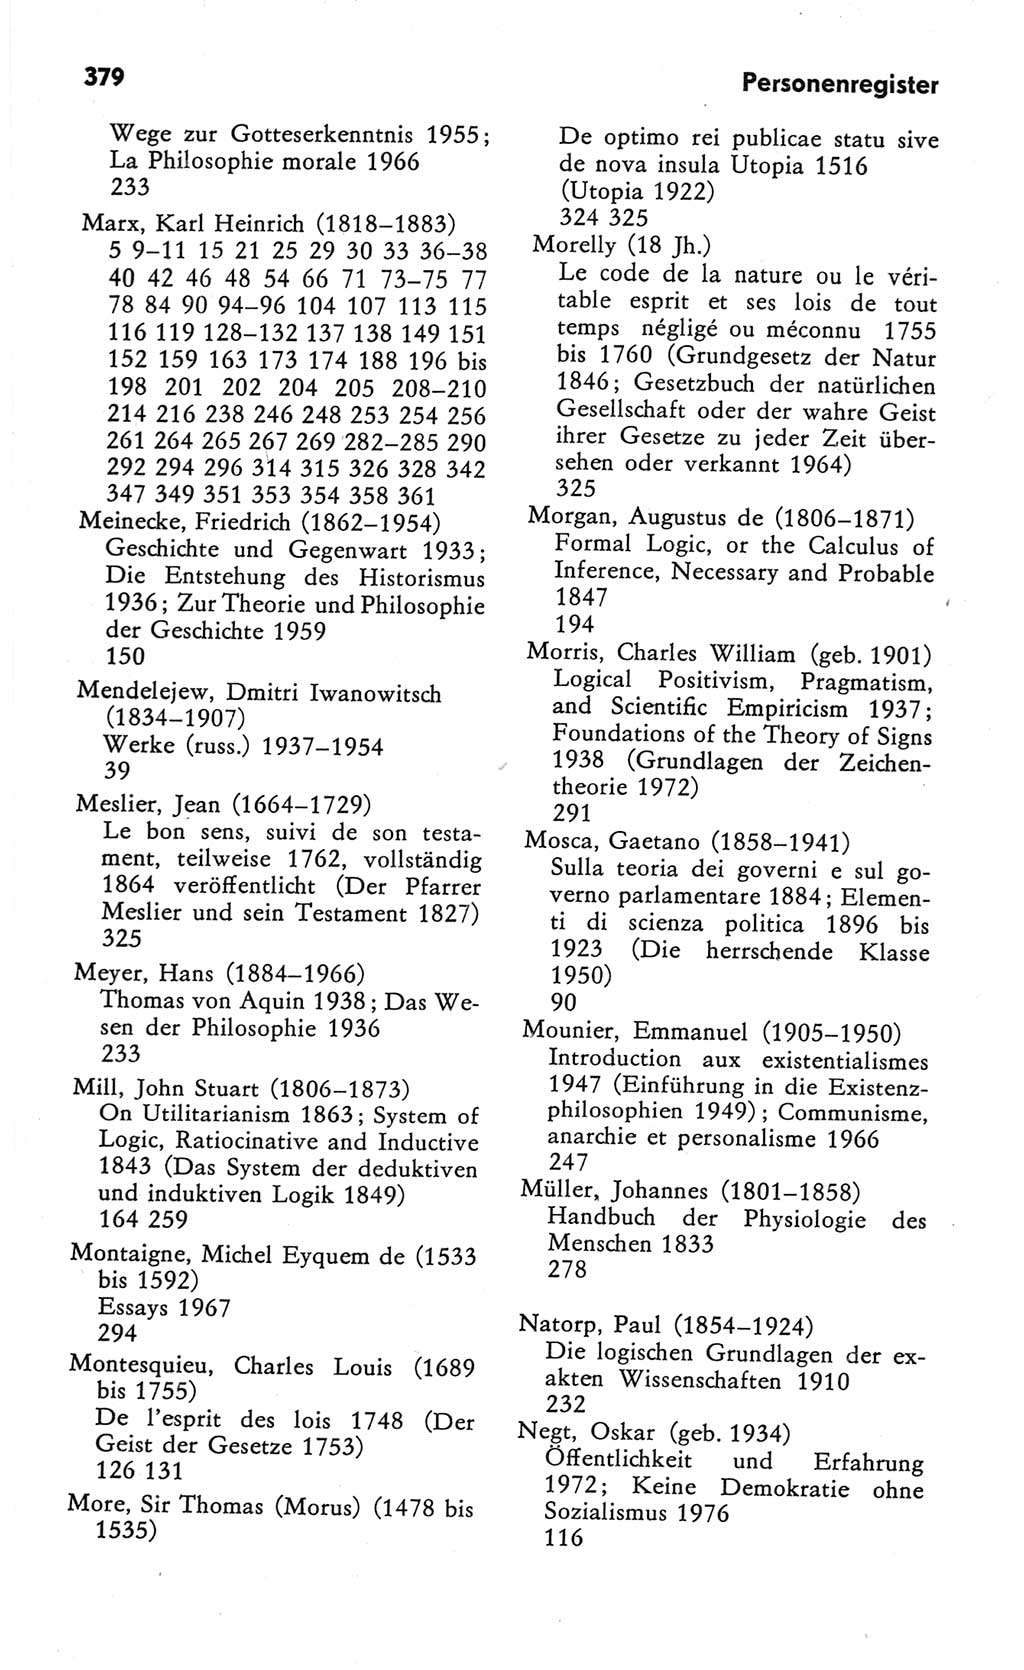 Kleines Wörterbuch der marxistisch-leninistischen Philosophie [Deutsche Demokratische Republik (DDR)] 1982, Seite 379 (Kl. Wb. ML Phil. DDR 1982, S. 379)